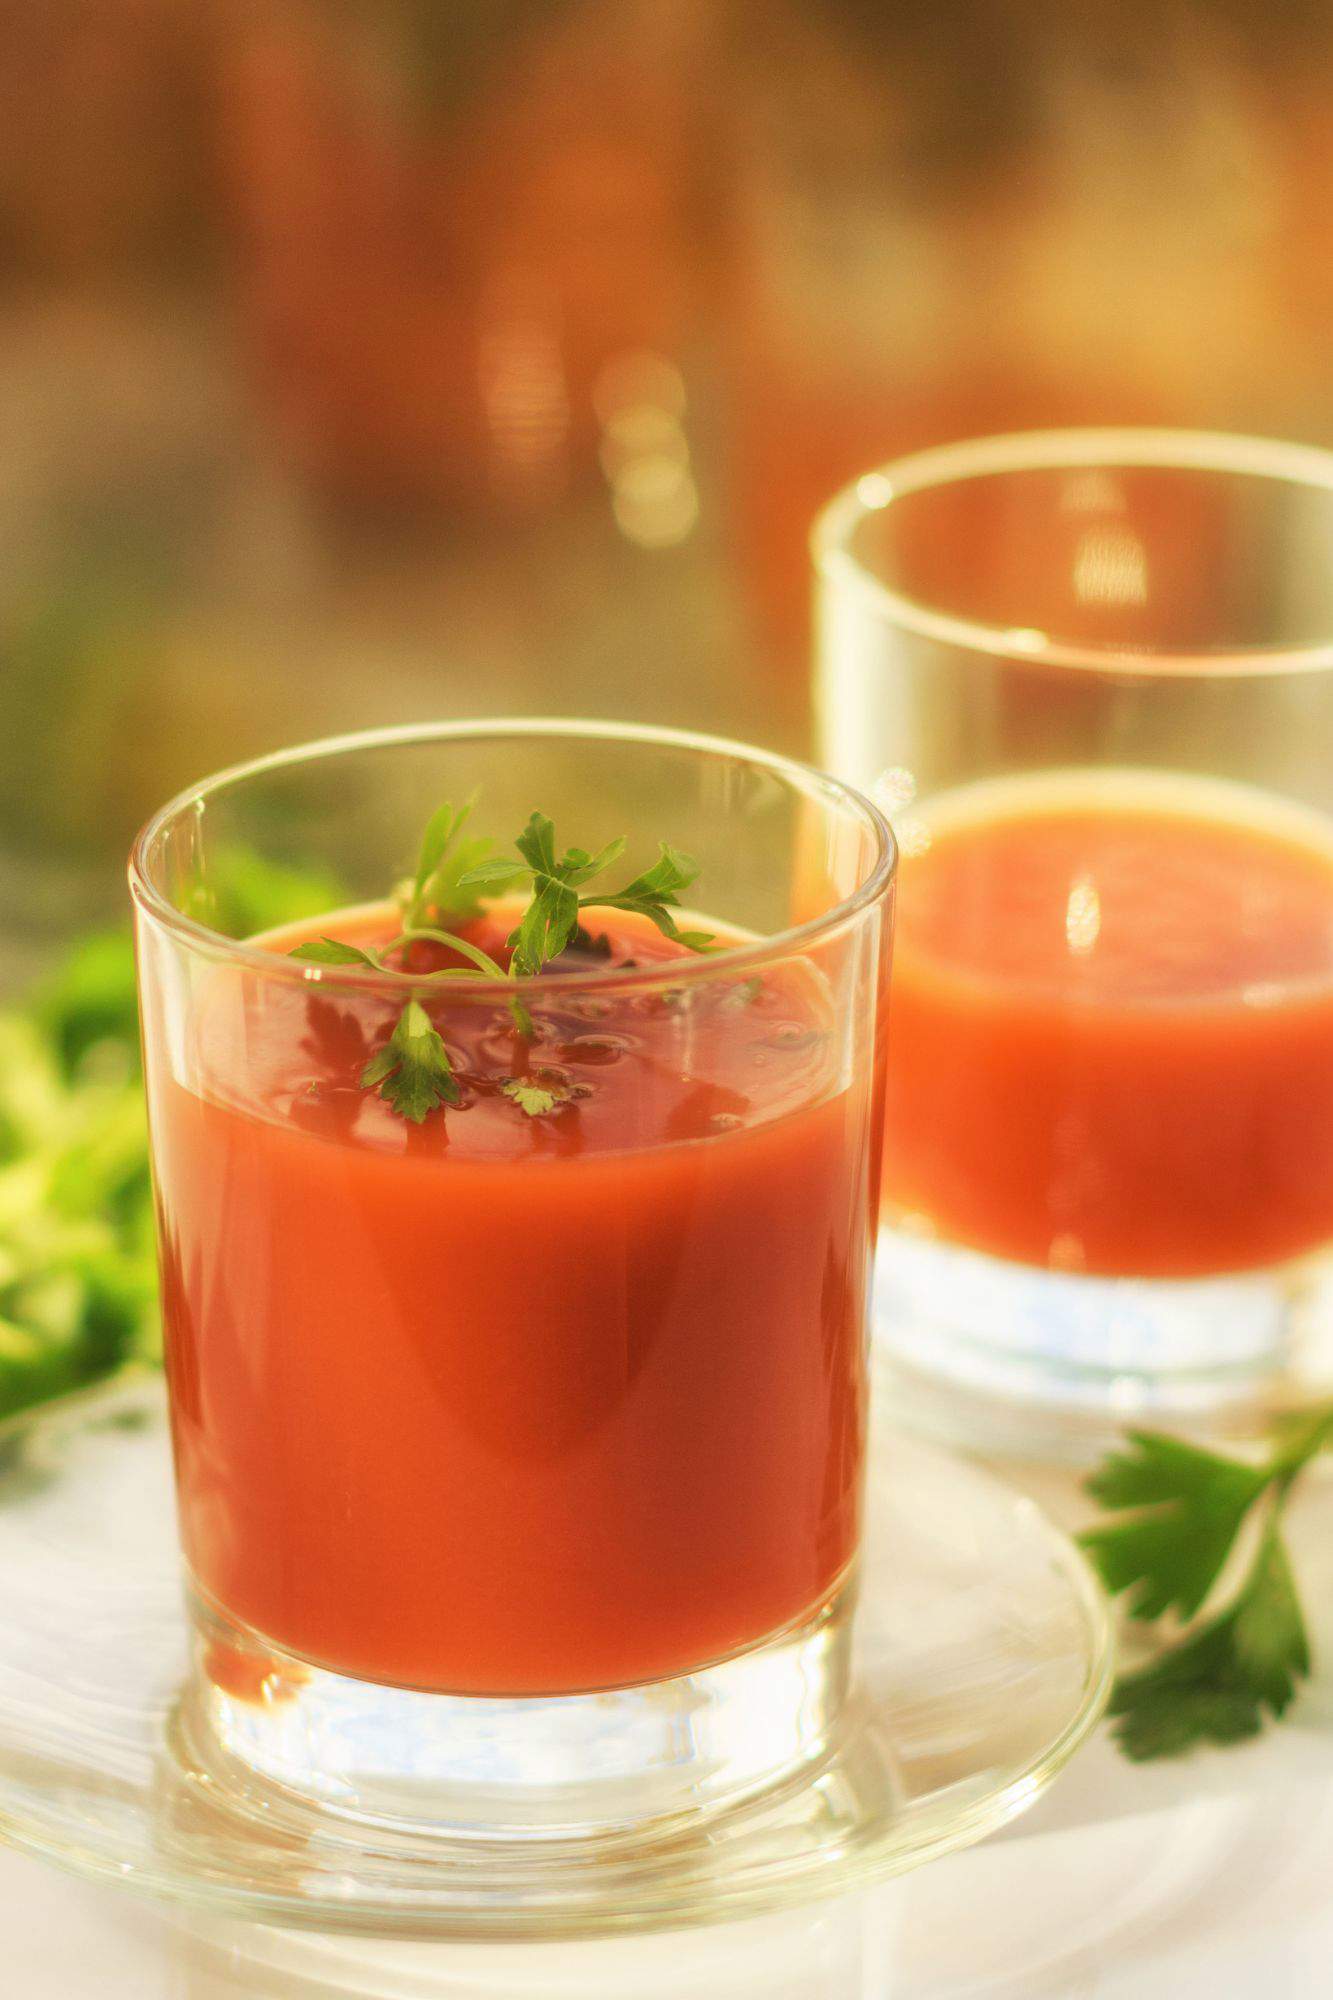 Un zumo de tomate en un vaso sencillo de cristal con perejil.